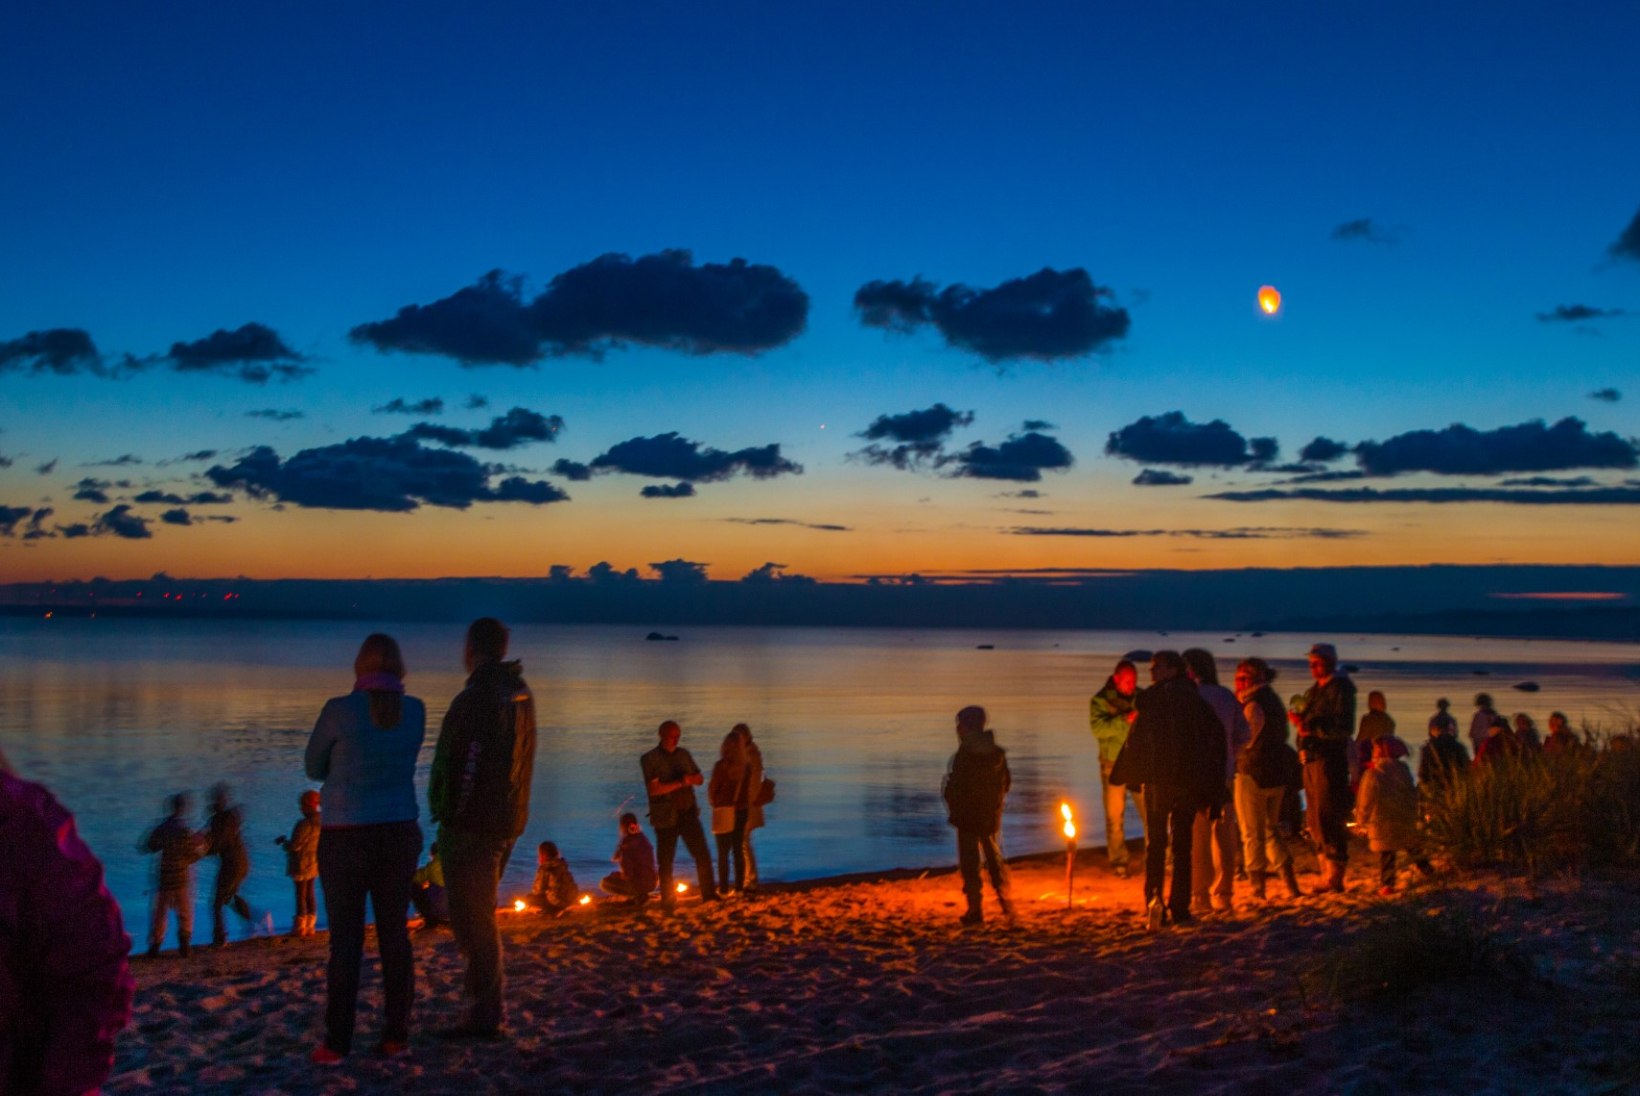 GALERII: muinastulede öö Laulasmaa rannas